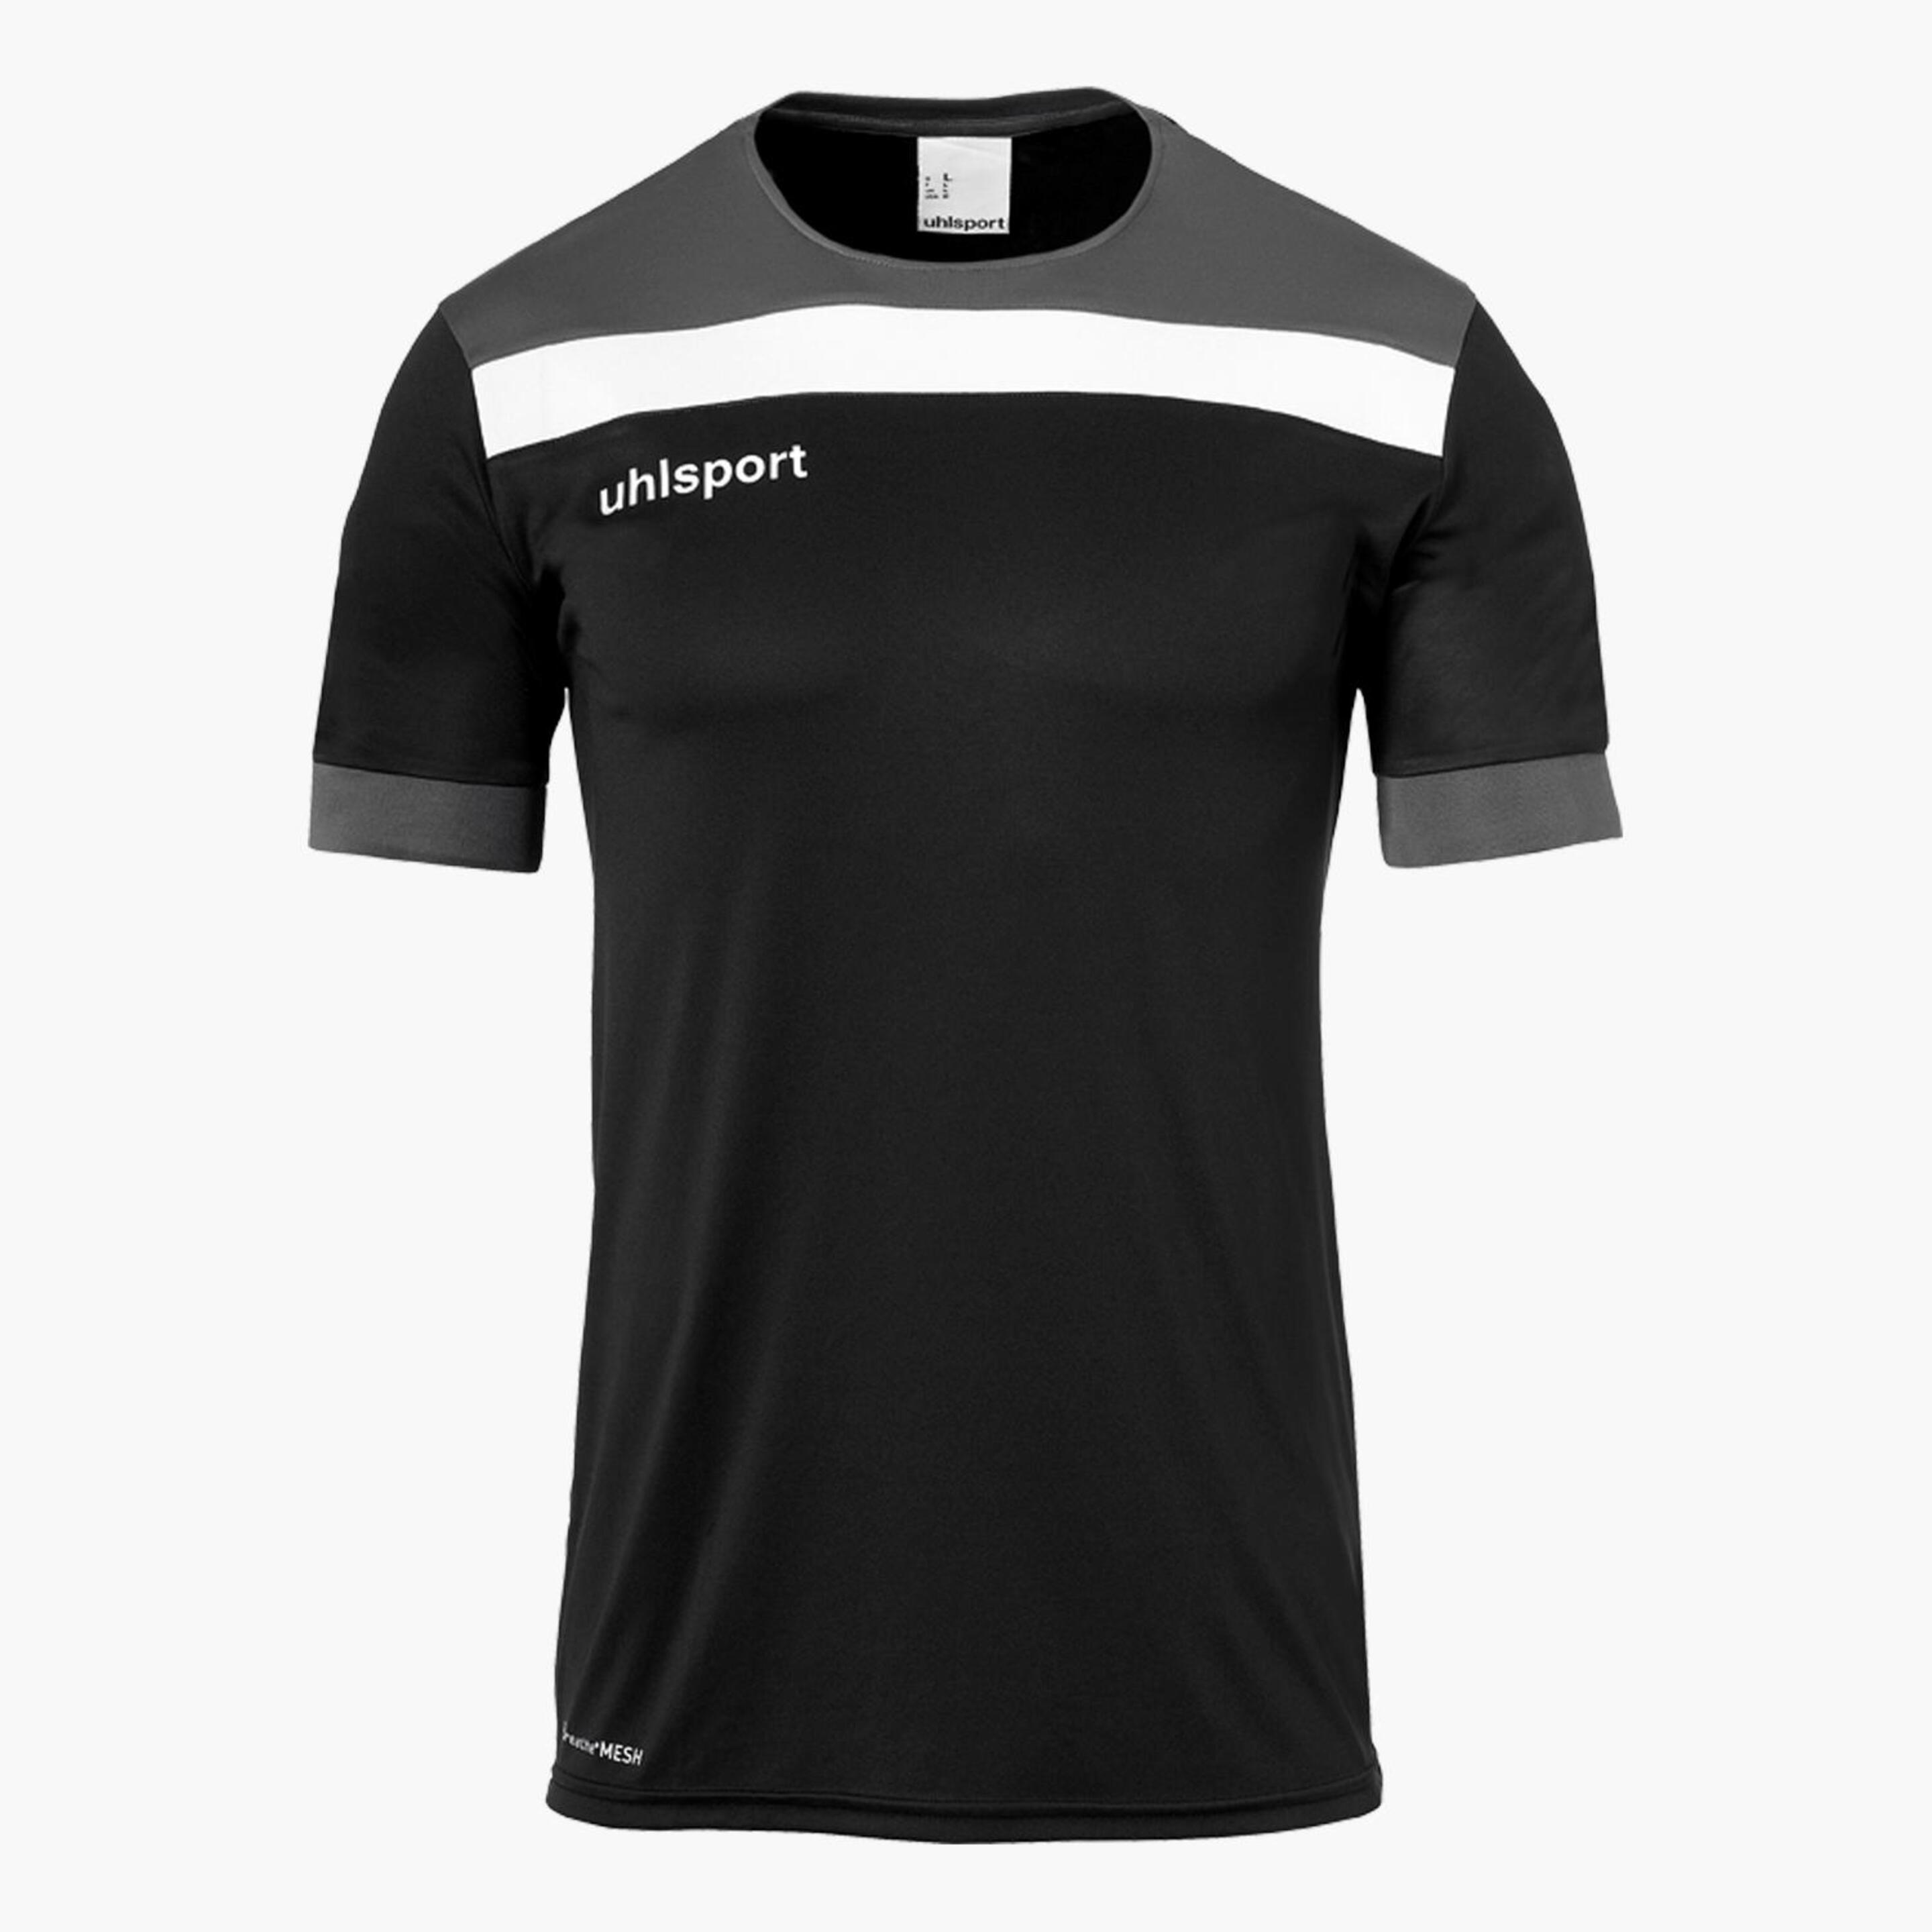 Camiseta Uhlsport - negro - 